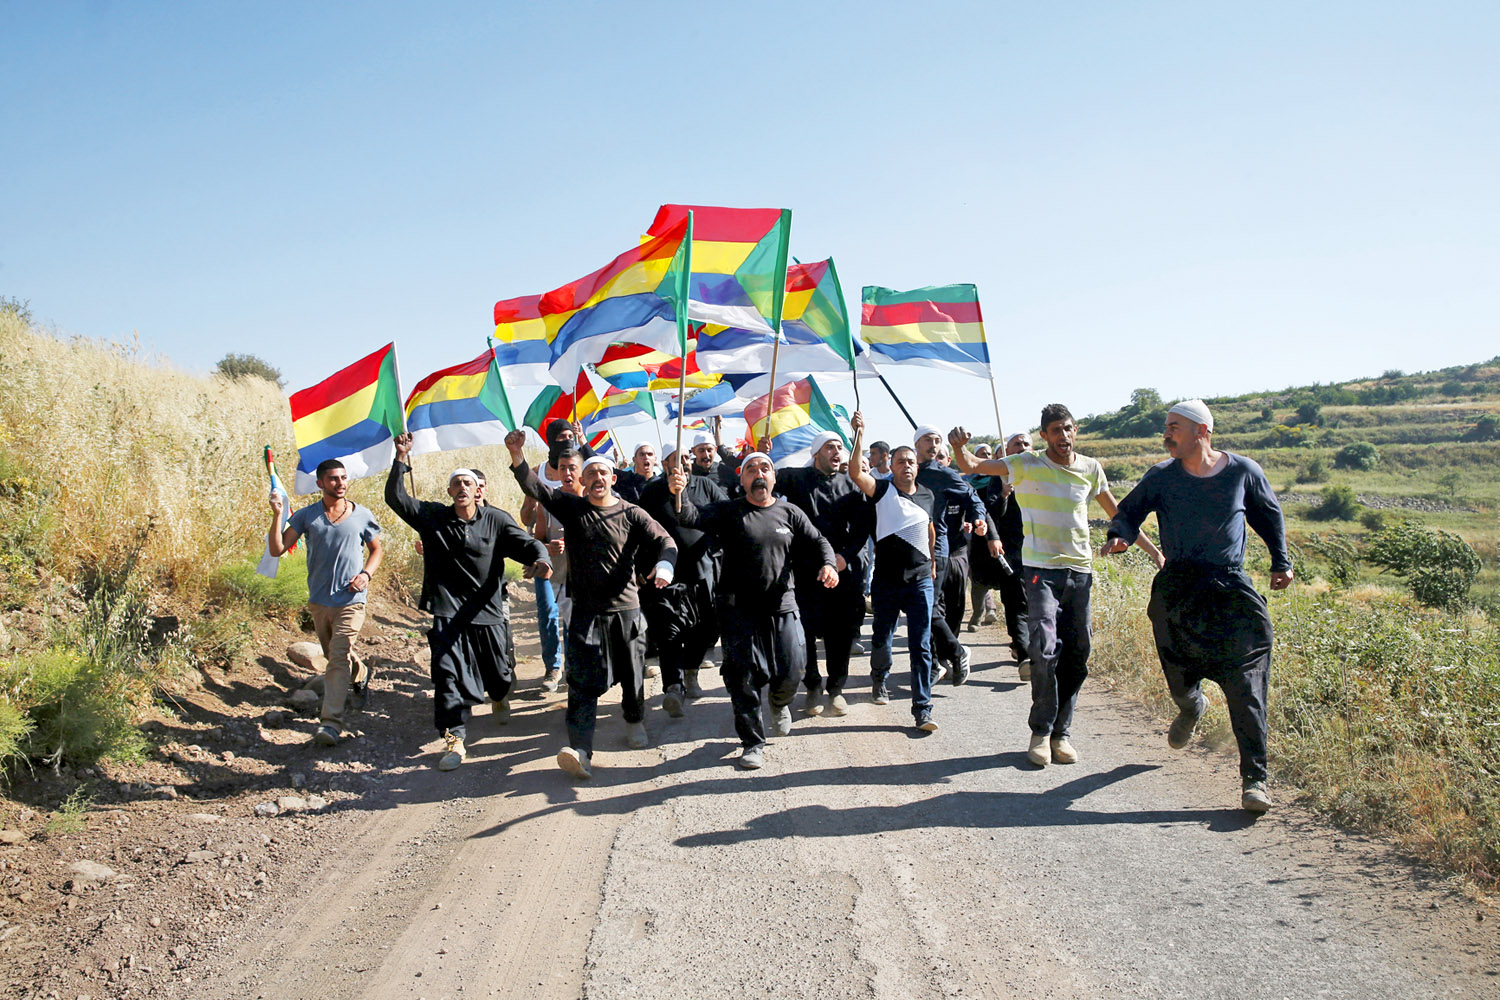 Drúz zászlók alatt vonuló menet az izraeli határnál